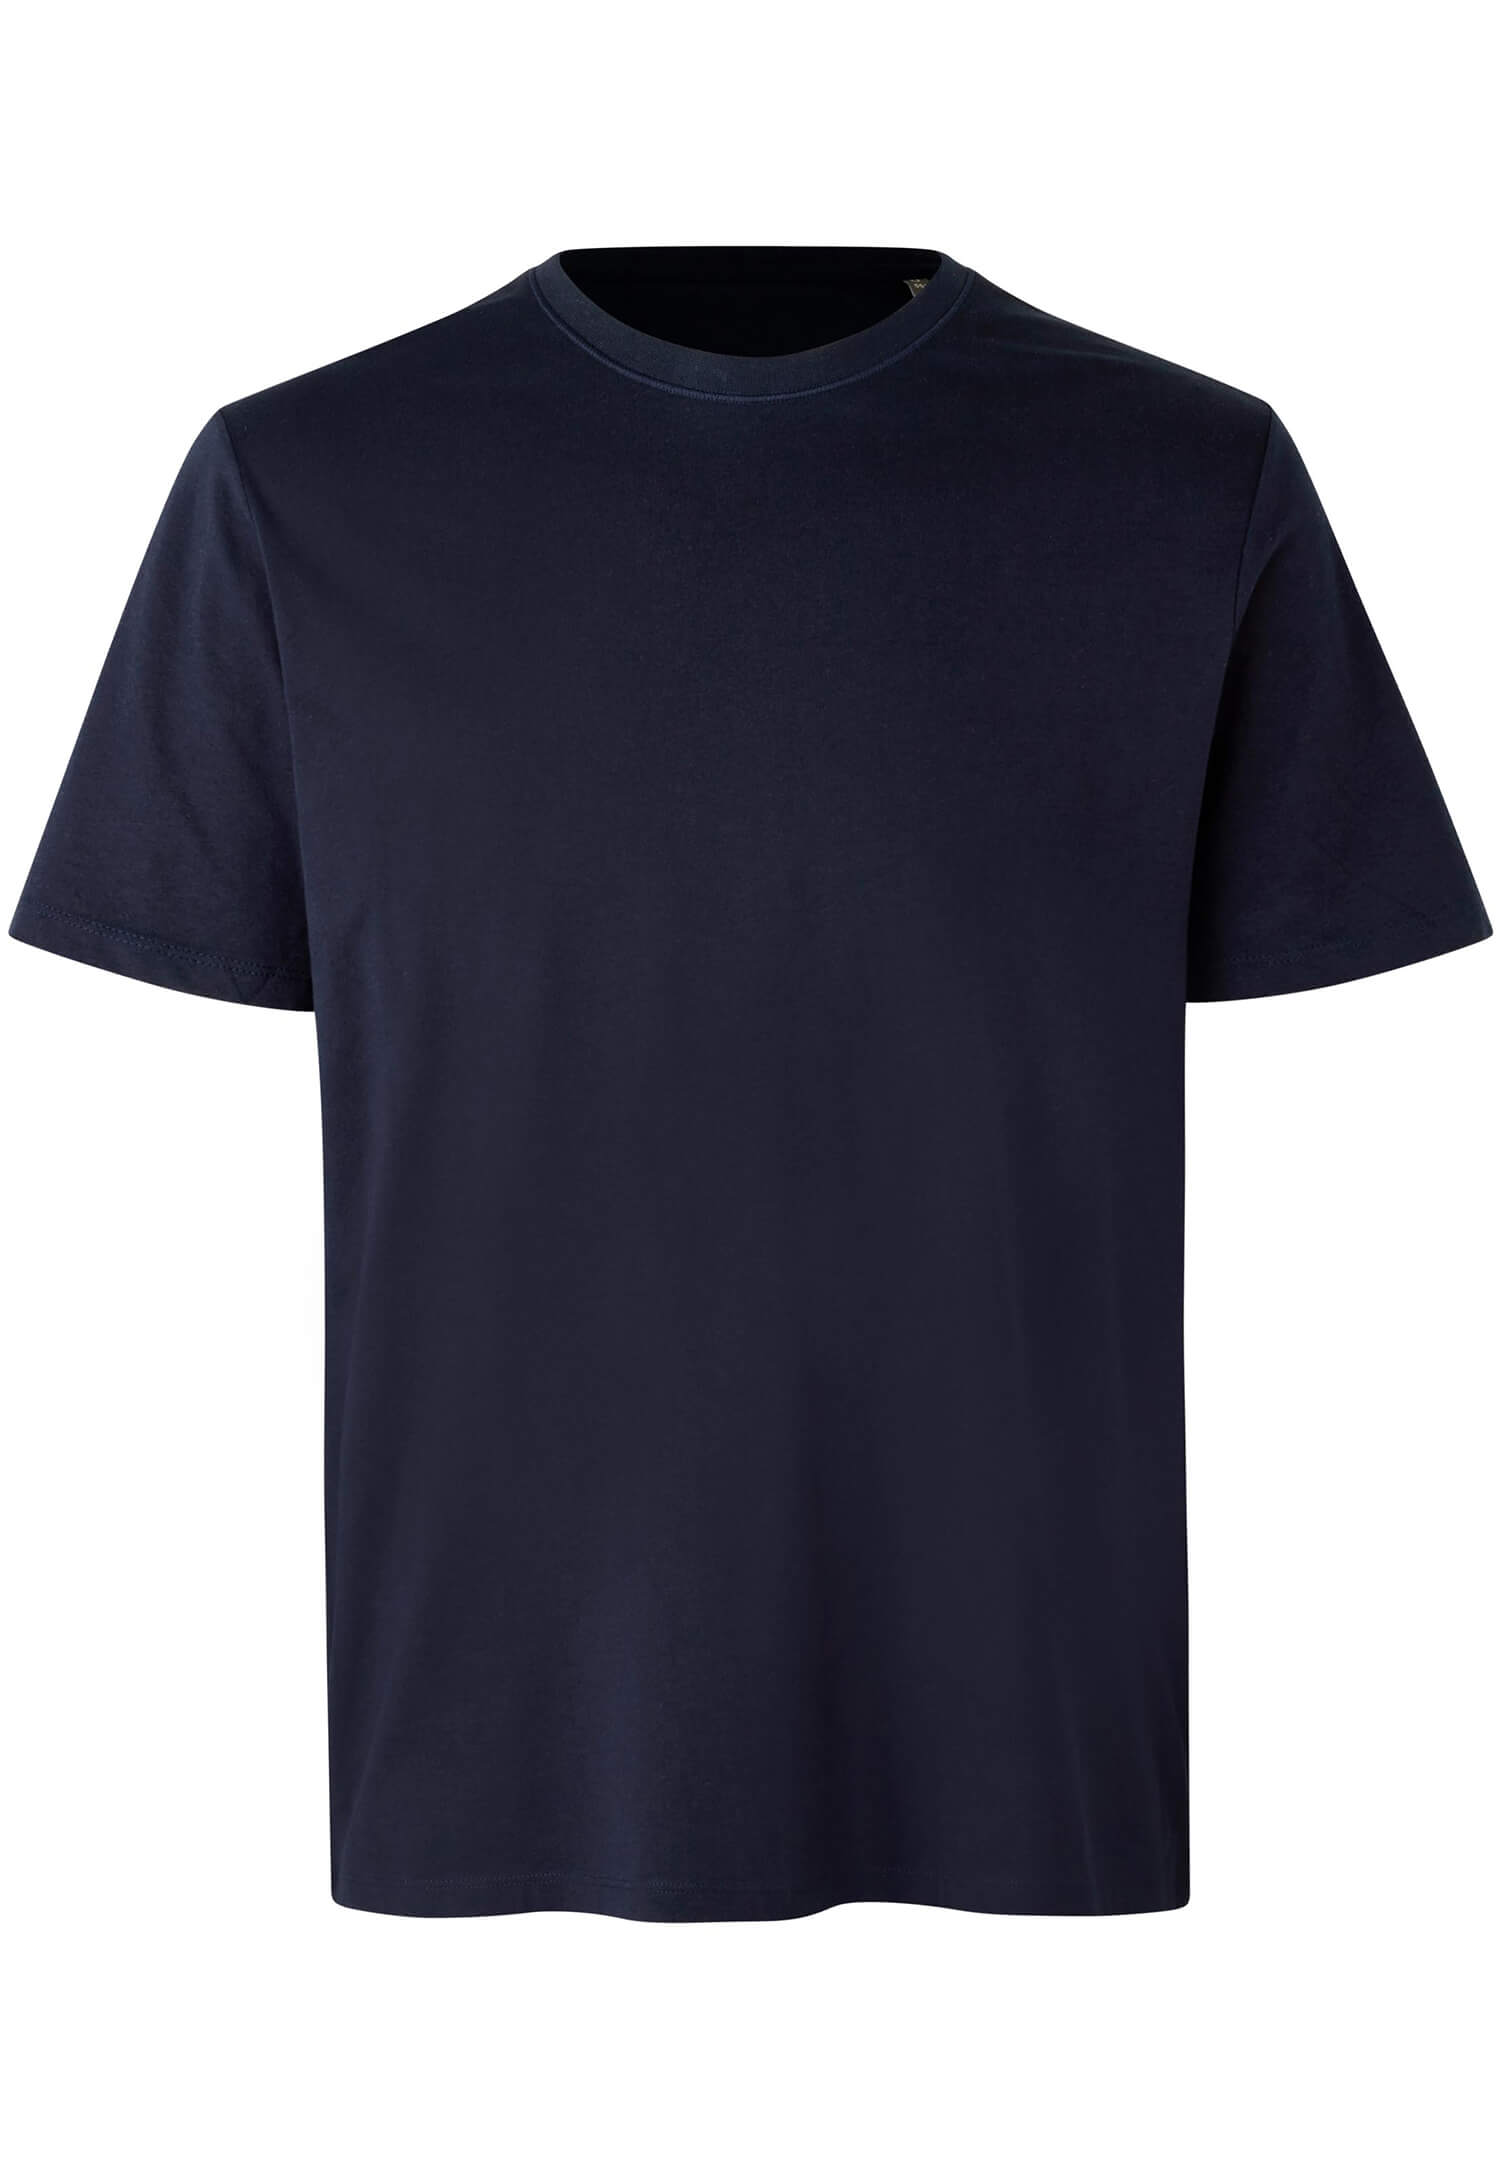 Herren Bio T-Shirt Größe: 4XL Farbe: marine